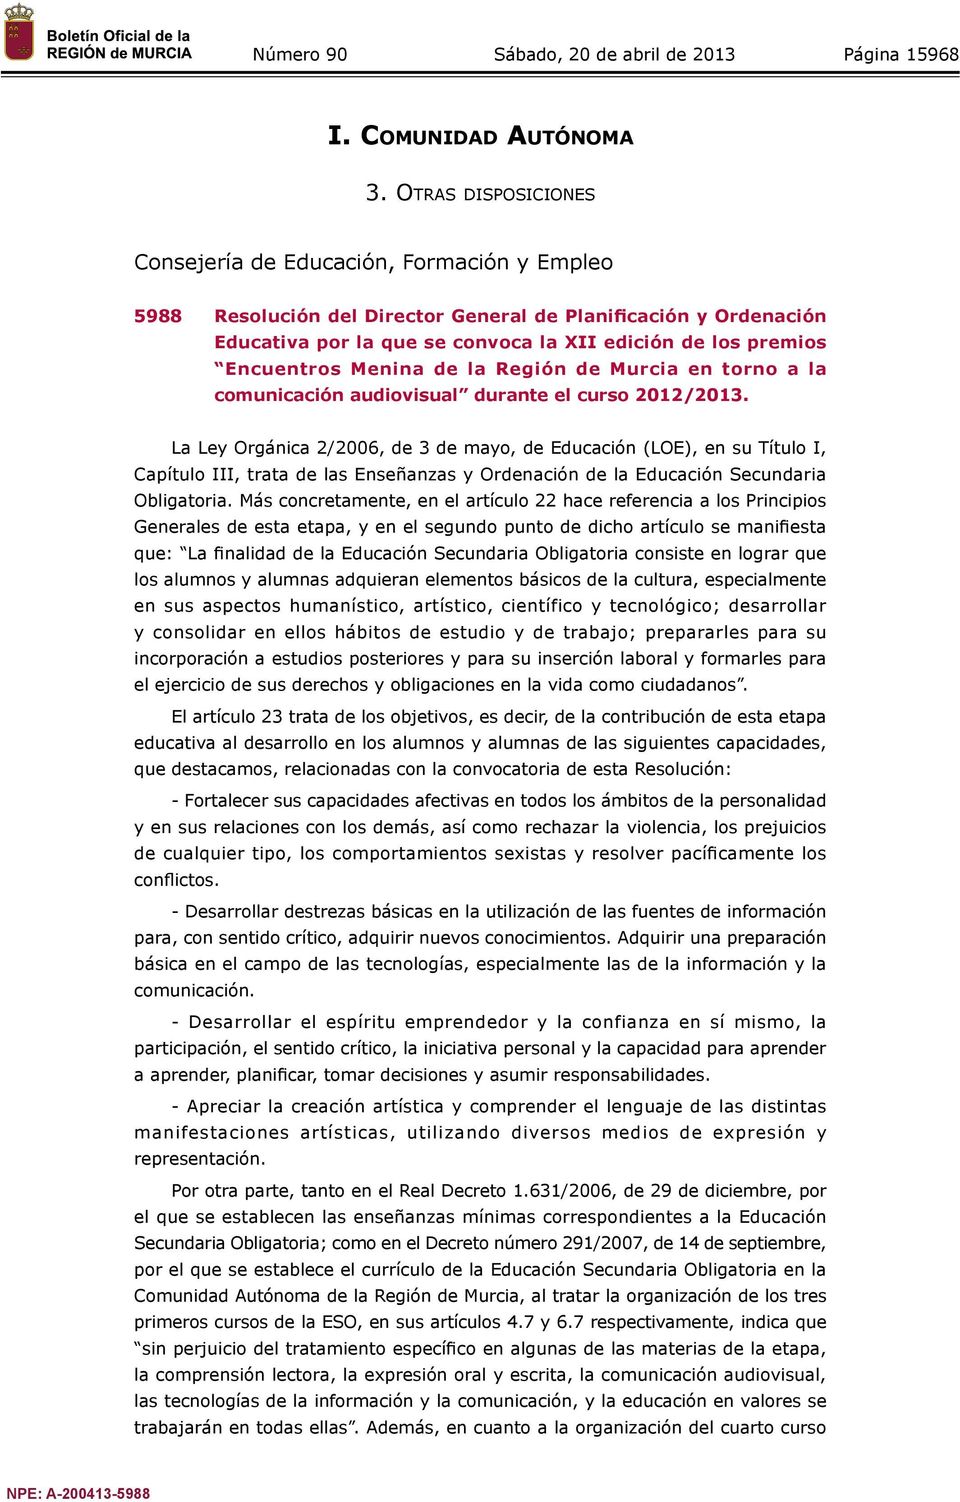 Encuentros Menina de la Región de Murcia en torno a la comunicación audiovisual durante el curso 2012/2013.